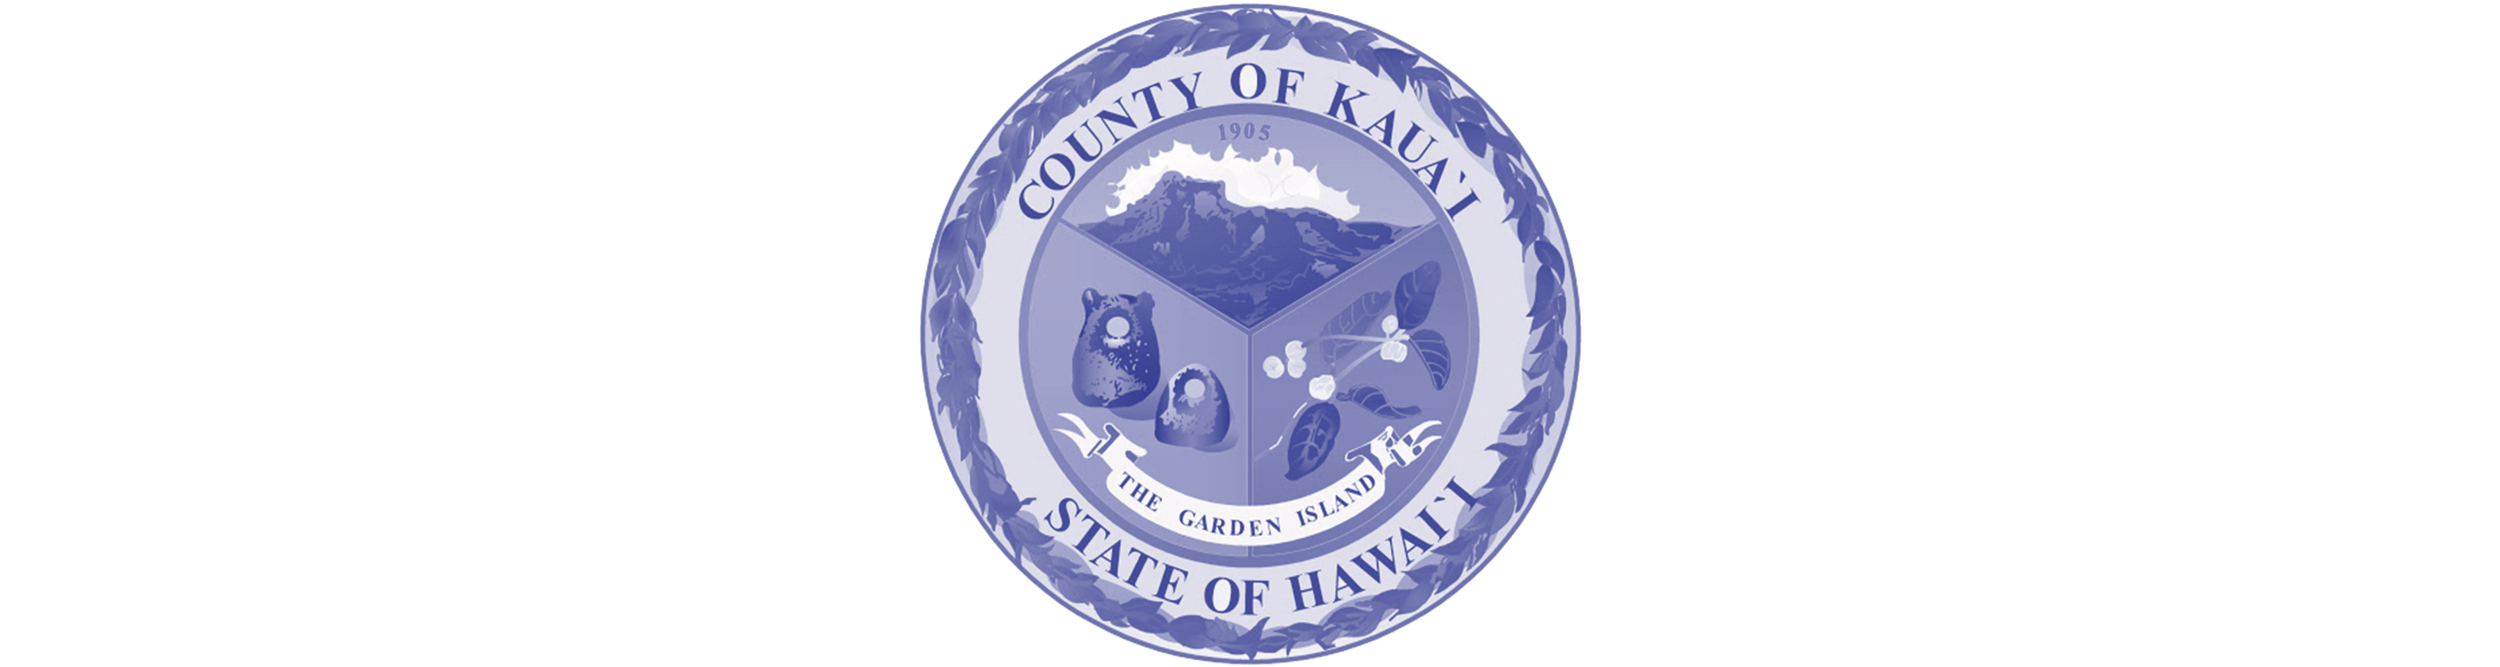 HPHA-waiwai-logo-Kauai-County.png